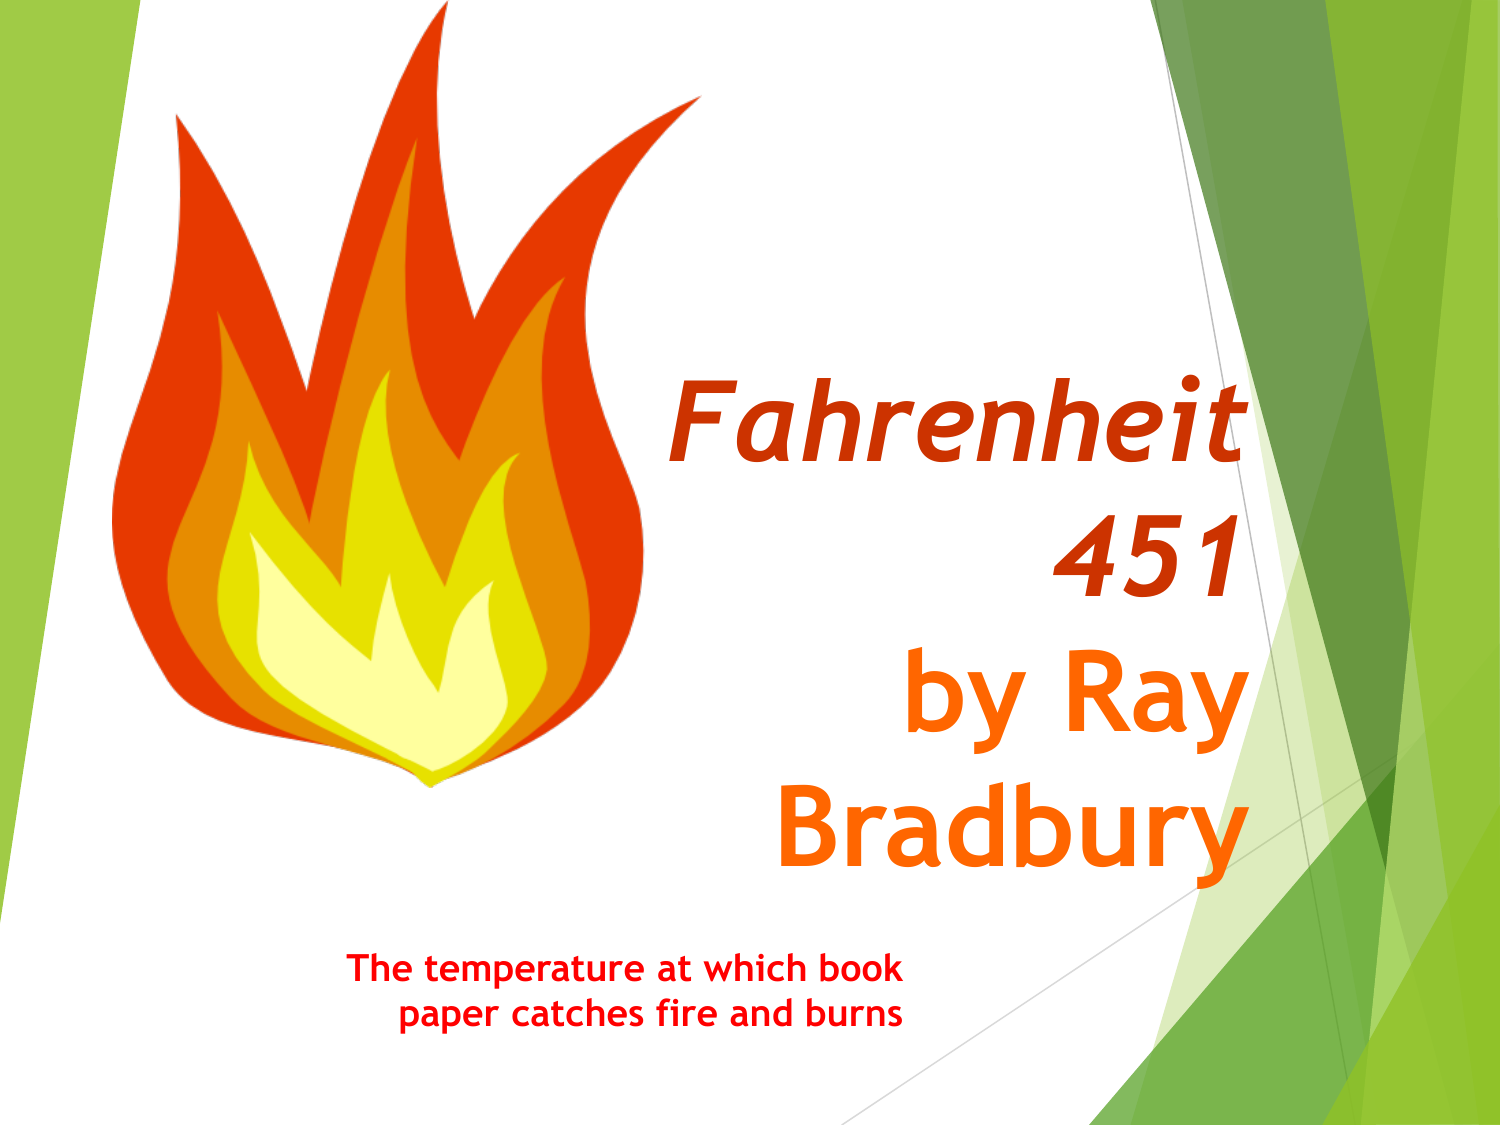 Giới thiệu Fahrenheit 451: Cuốn tiểu thuyết Fahrenheit 451 của tác giả Ray Bradbury là một trong những tác phẩm văn học tiêu biểu của thế kỷ